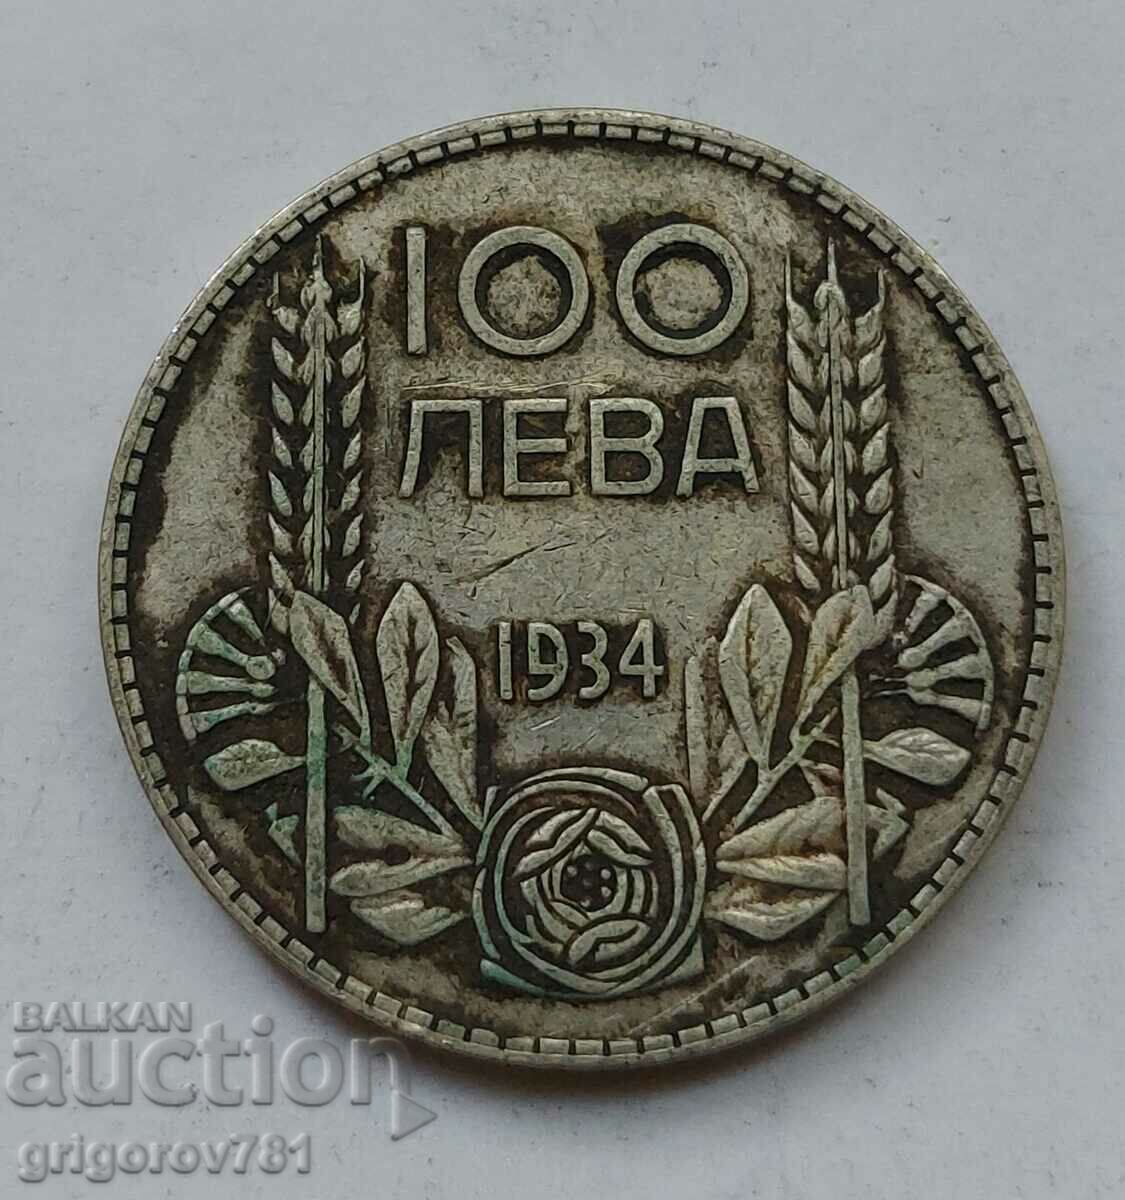 Ασήμι 100 λέβα Βουλγαρία 1934 - ασημένιο νόμισμα #74